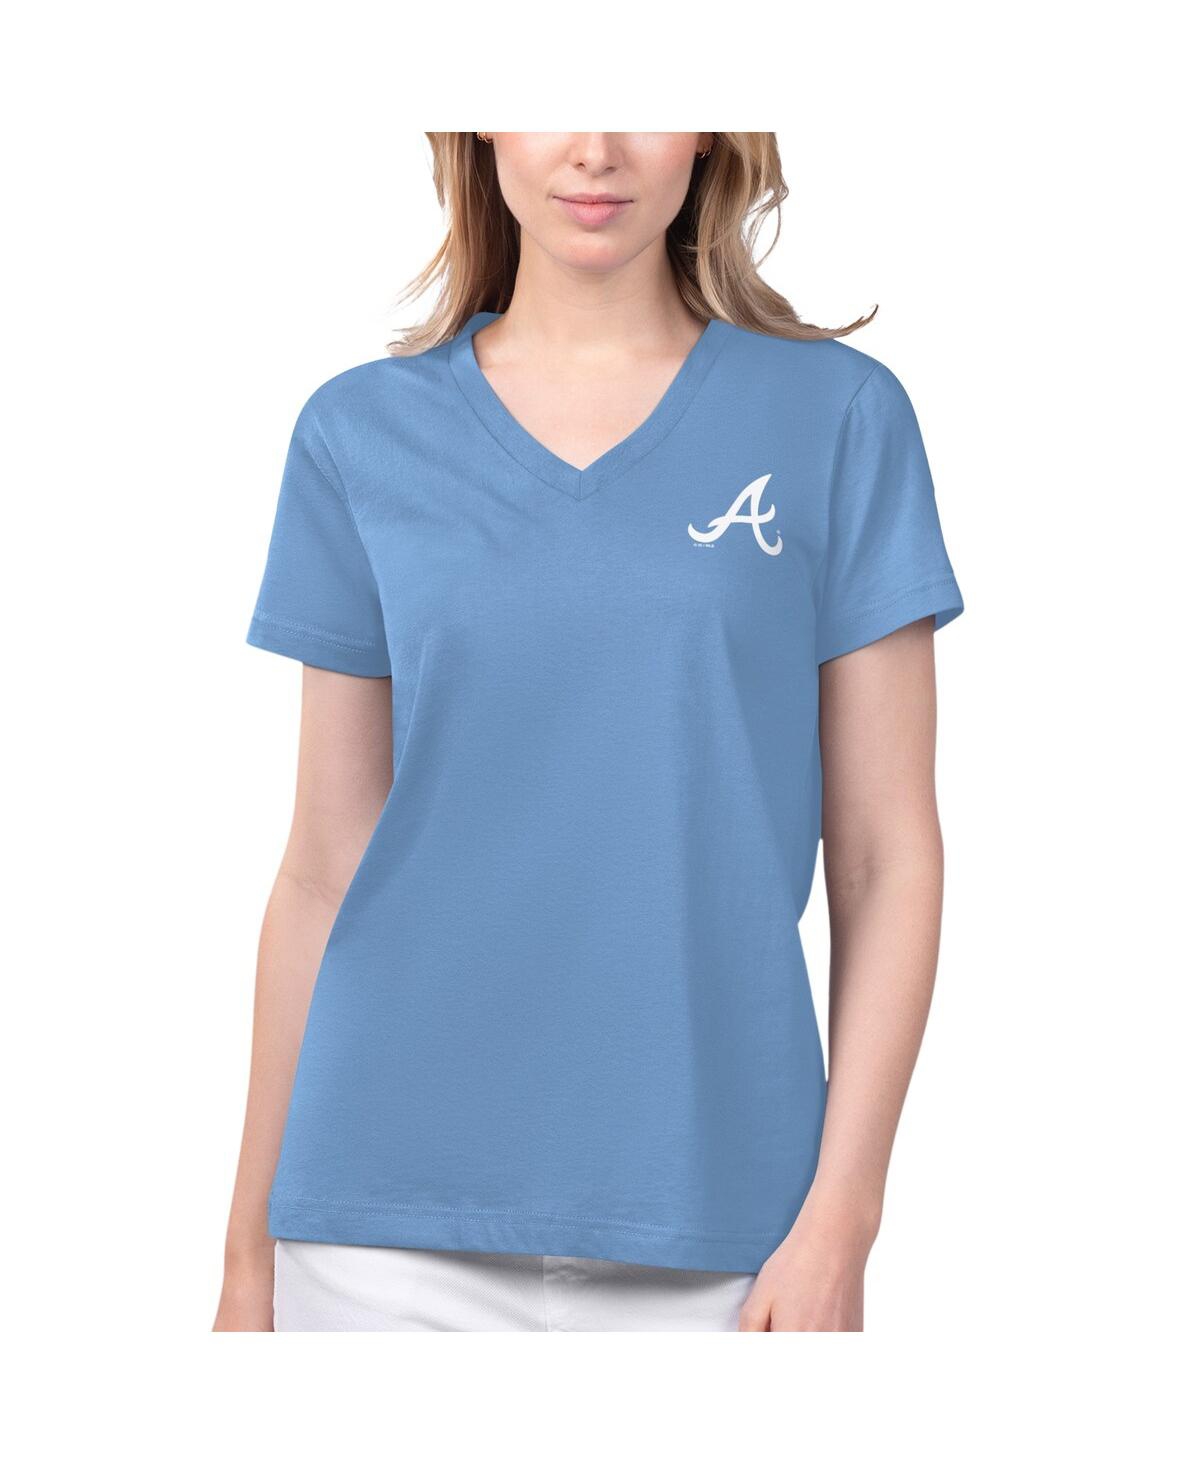 Shop Margaritaville Women's  Light Blue Atlanta Braves Game Time V-neck T-shirt